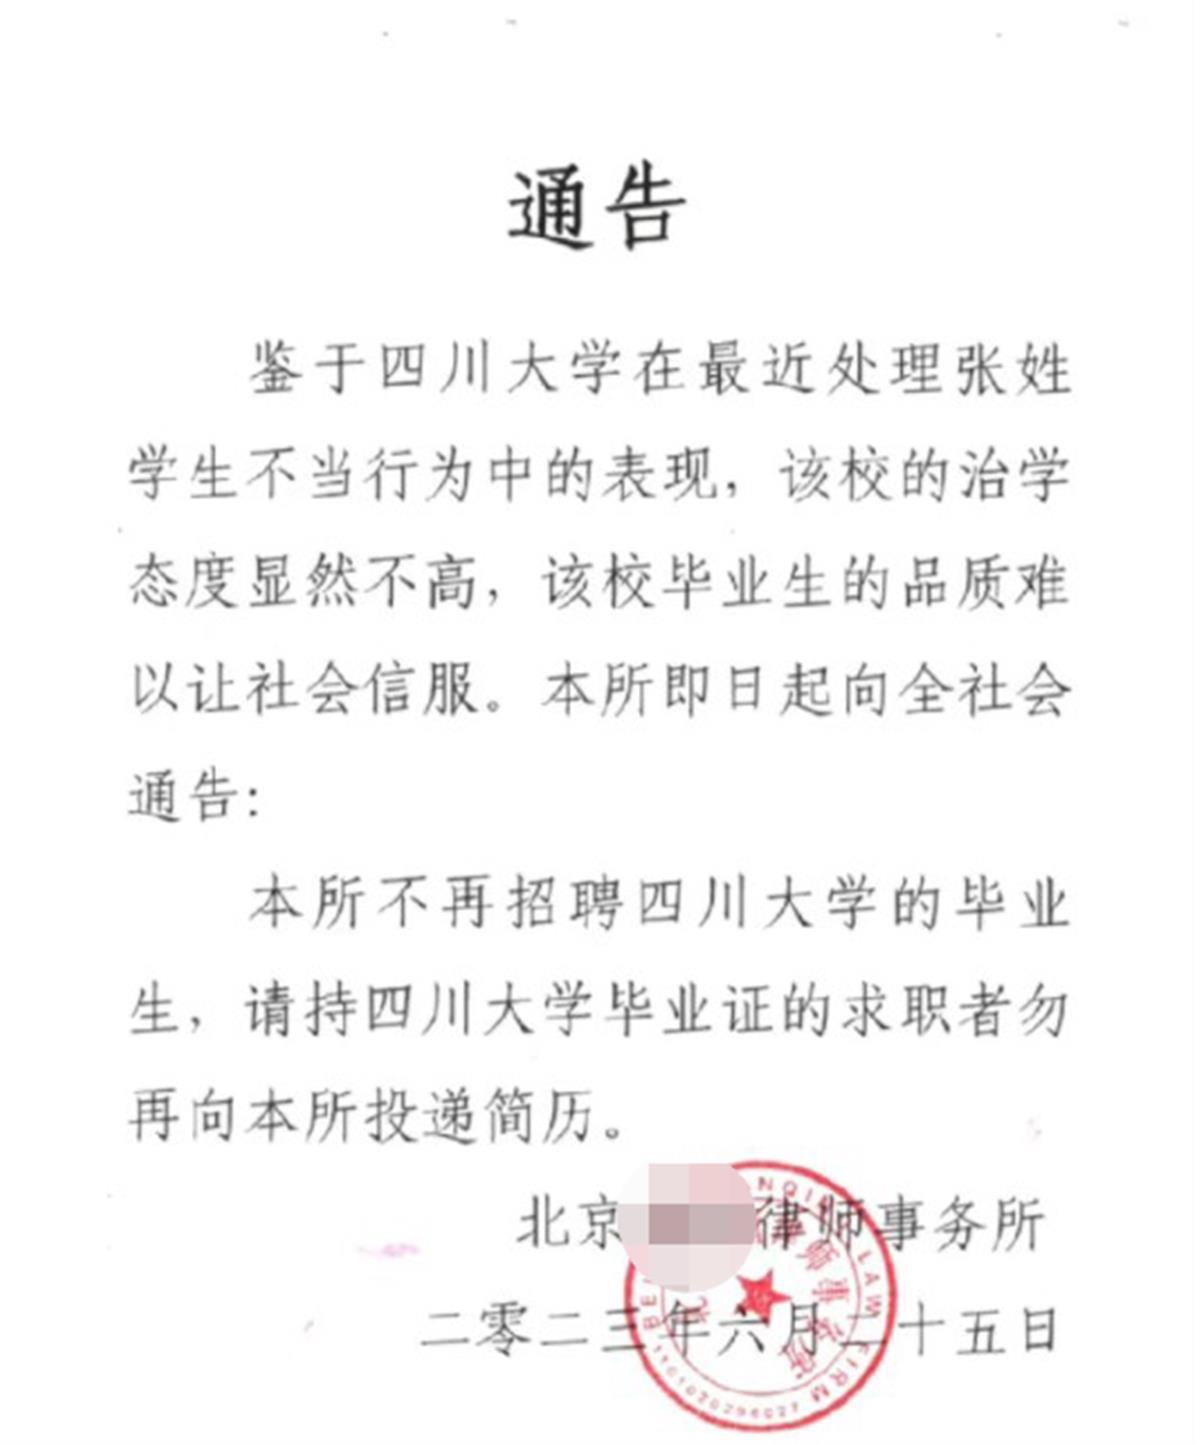 北京一律所发文拒聘川大毕业生，负责人回应称并非就业歧视，第三方律师：知法犯法1